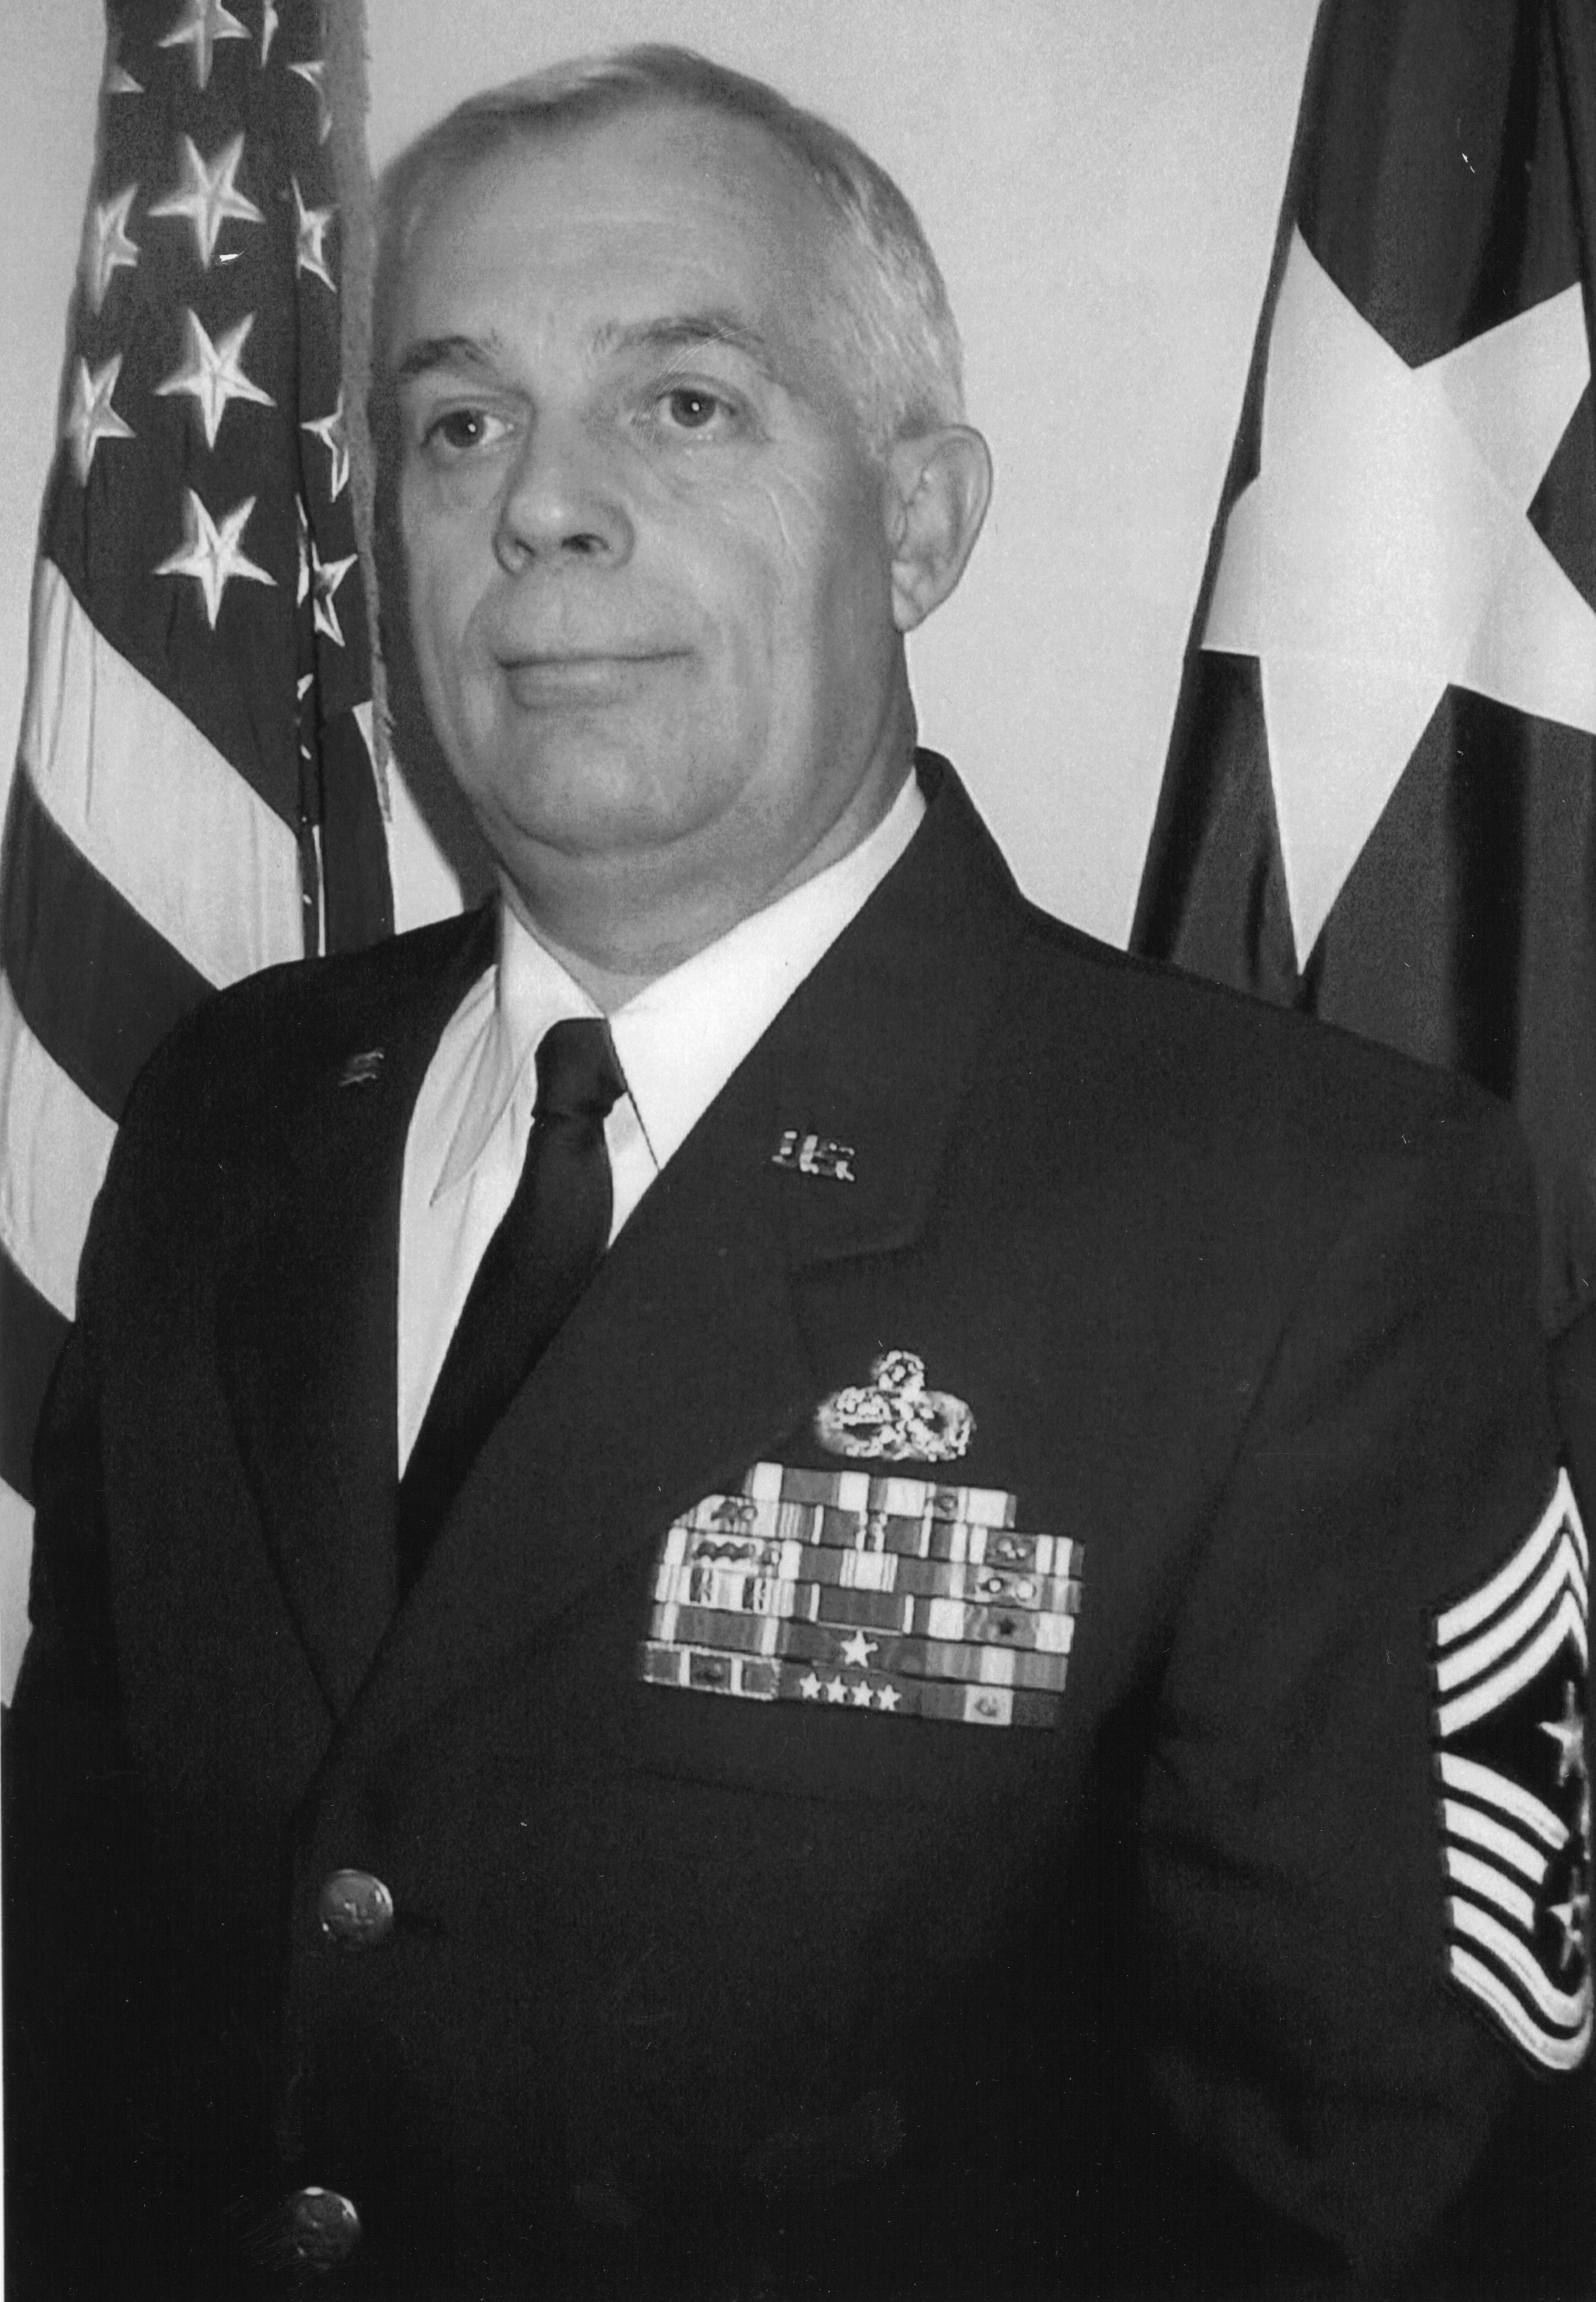 Command Chief Master Sergeant William M. Maginot